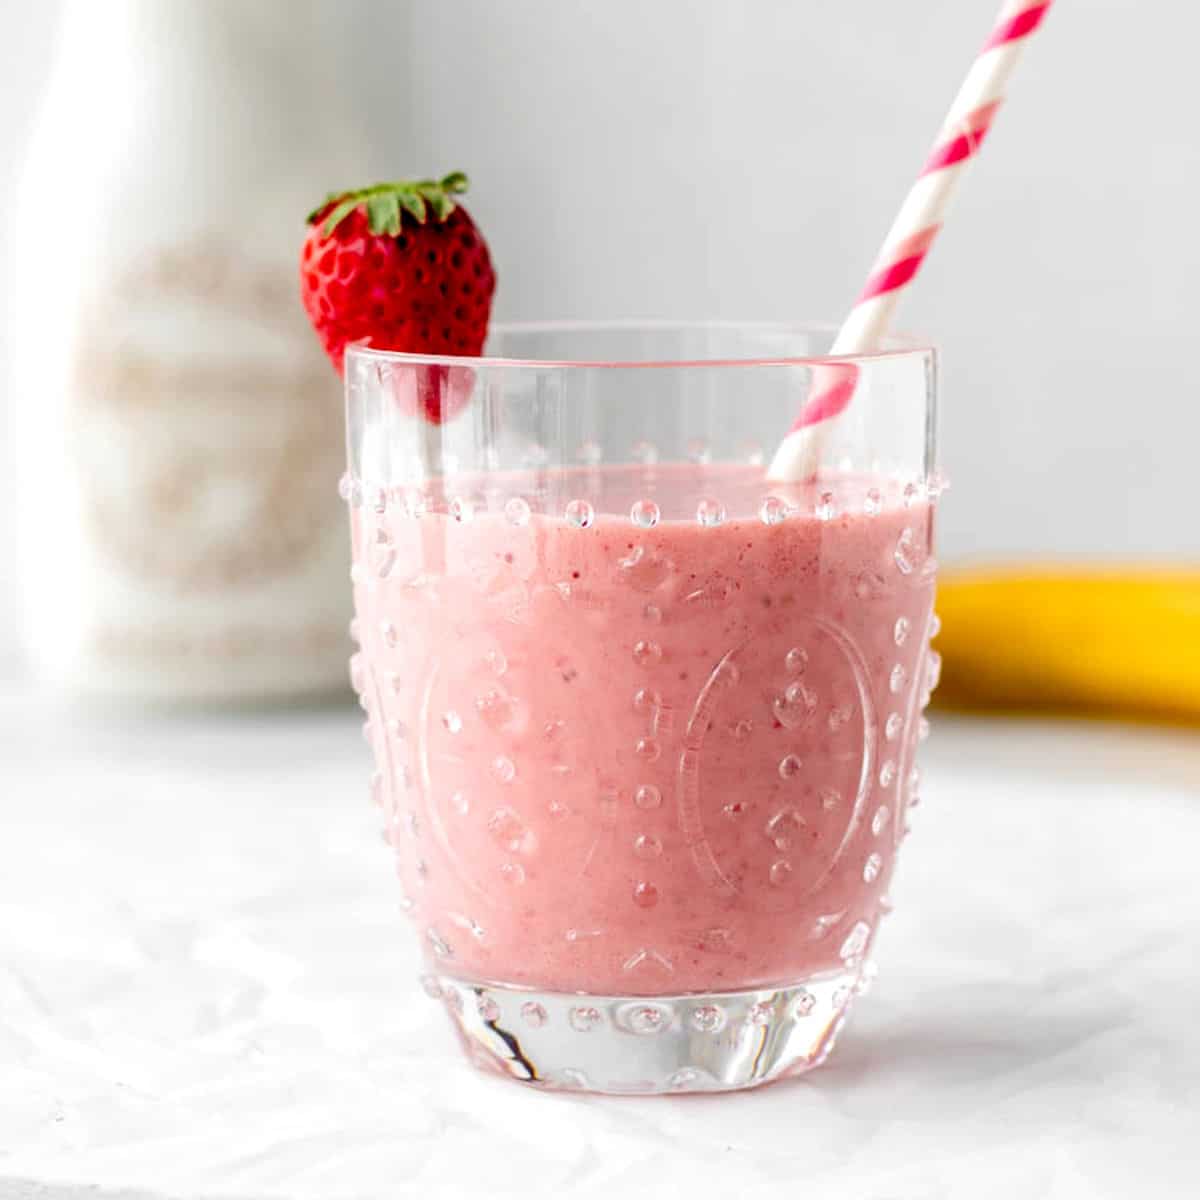 Strawberry Banana Smoothie Without Yogurt